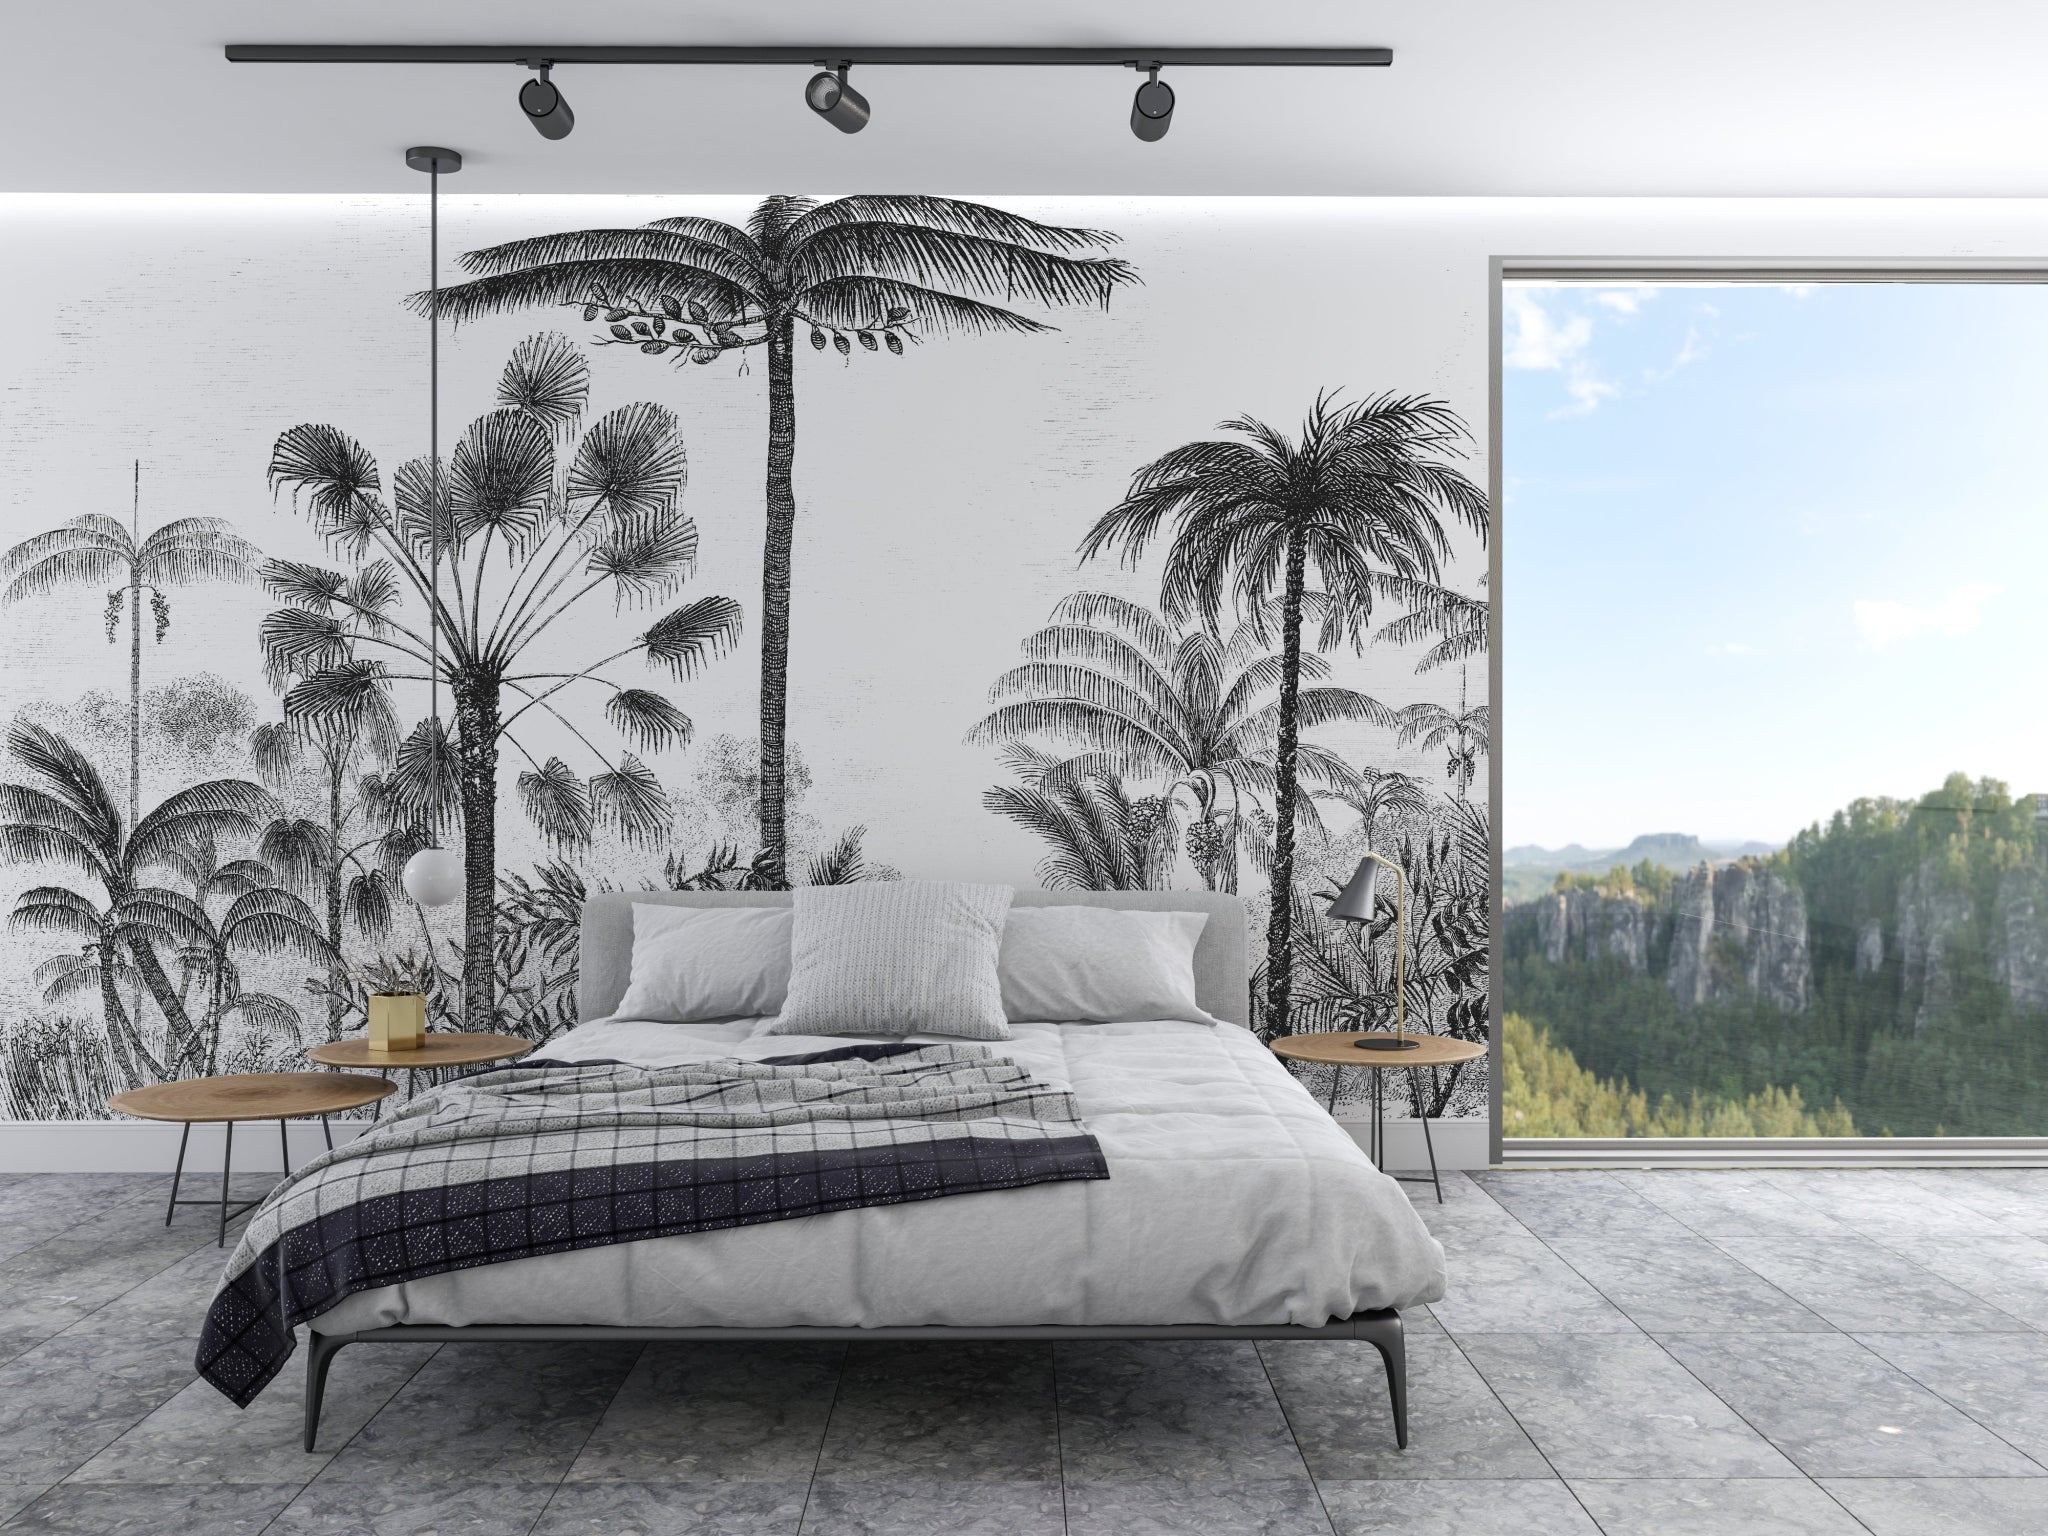 Papier peint Panoramique Jungle Black & White - Kam & Leon